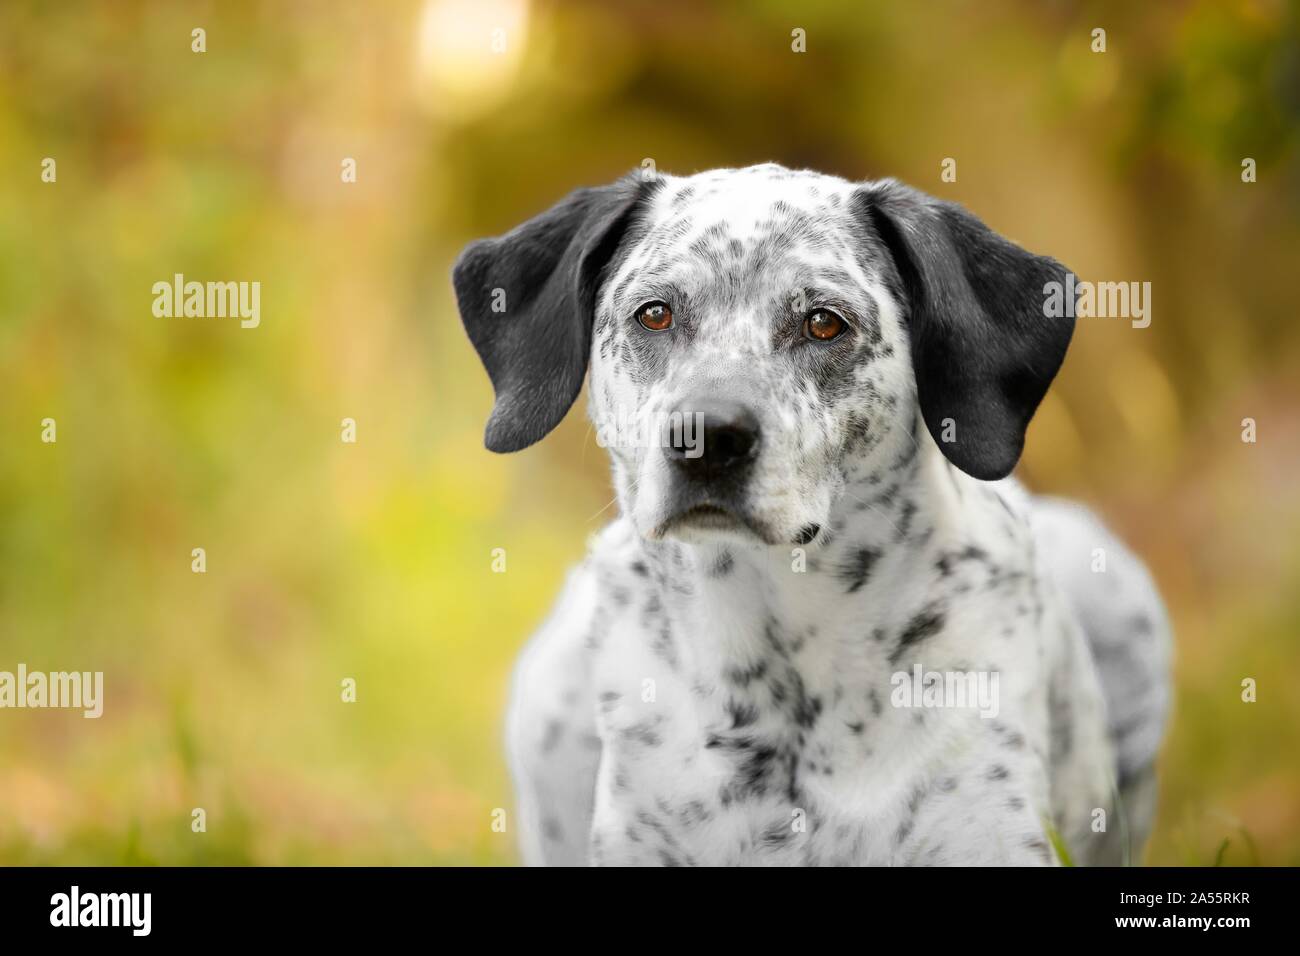 Weißer Kurzhaariger Hund Mit Schwarzen Flecken Stockfotos und ...